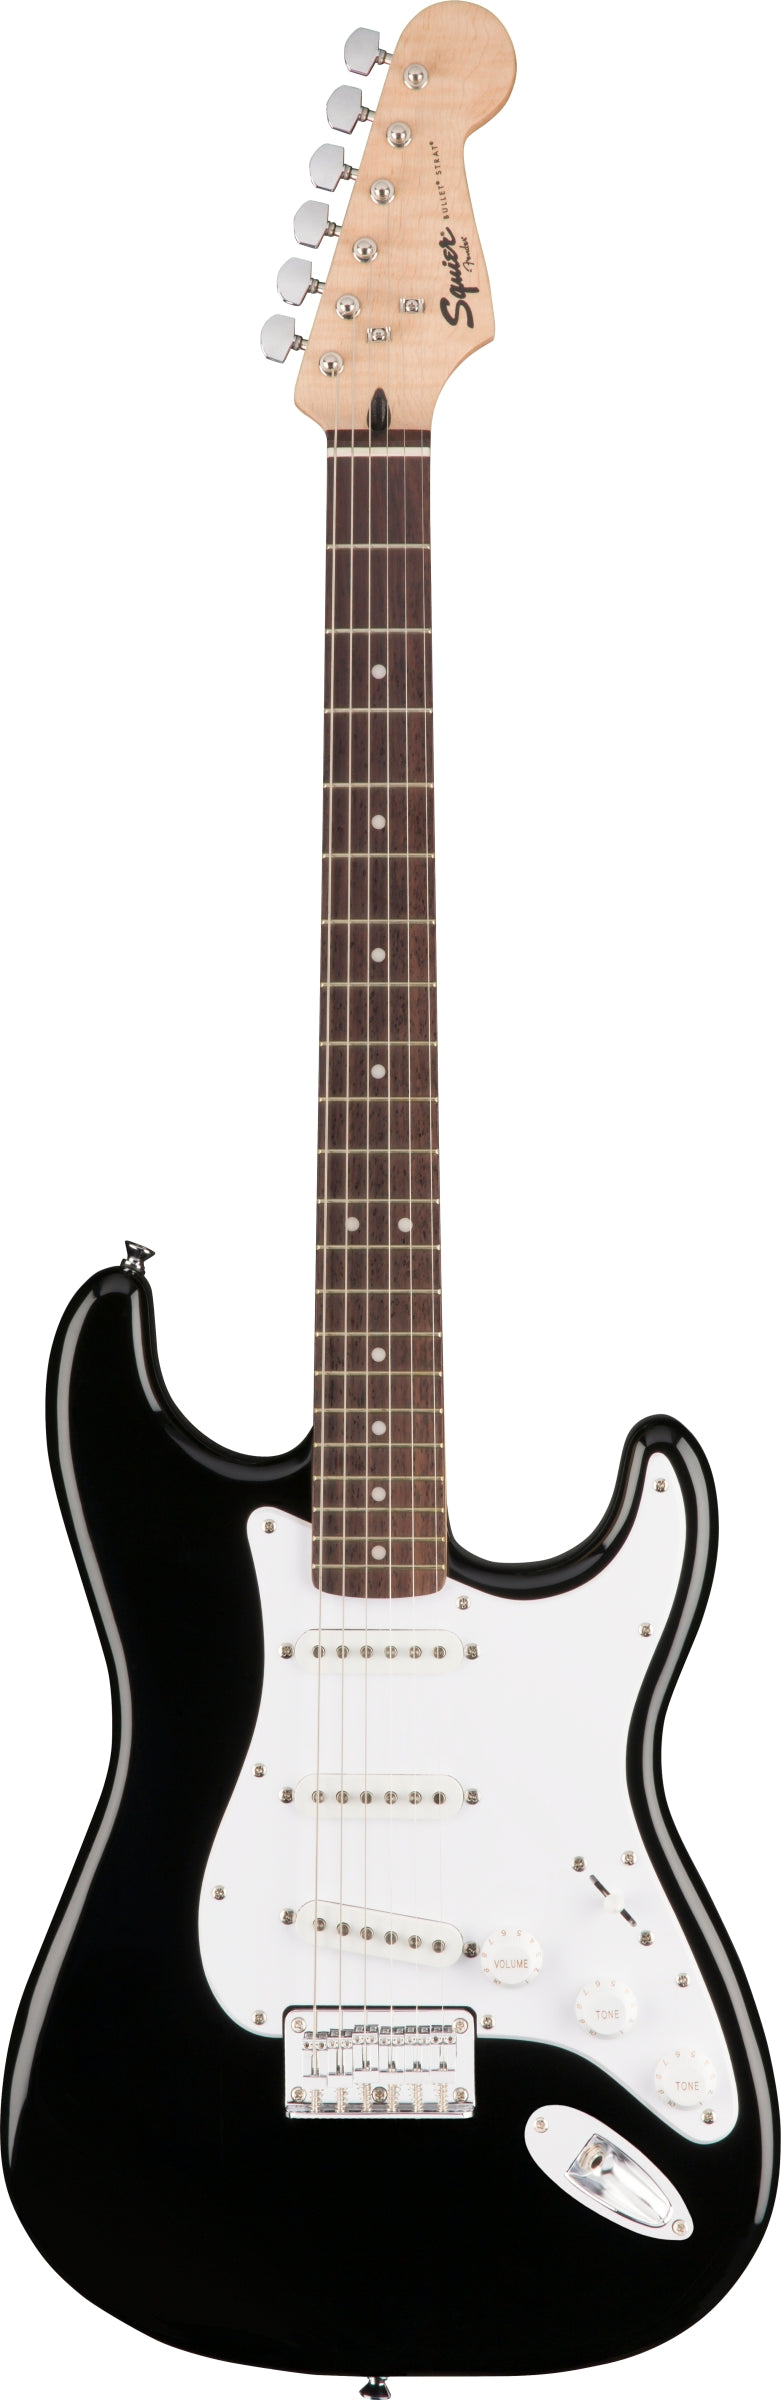 Fender Squier Bullet Stratocaster HT, Black